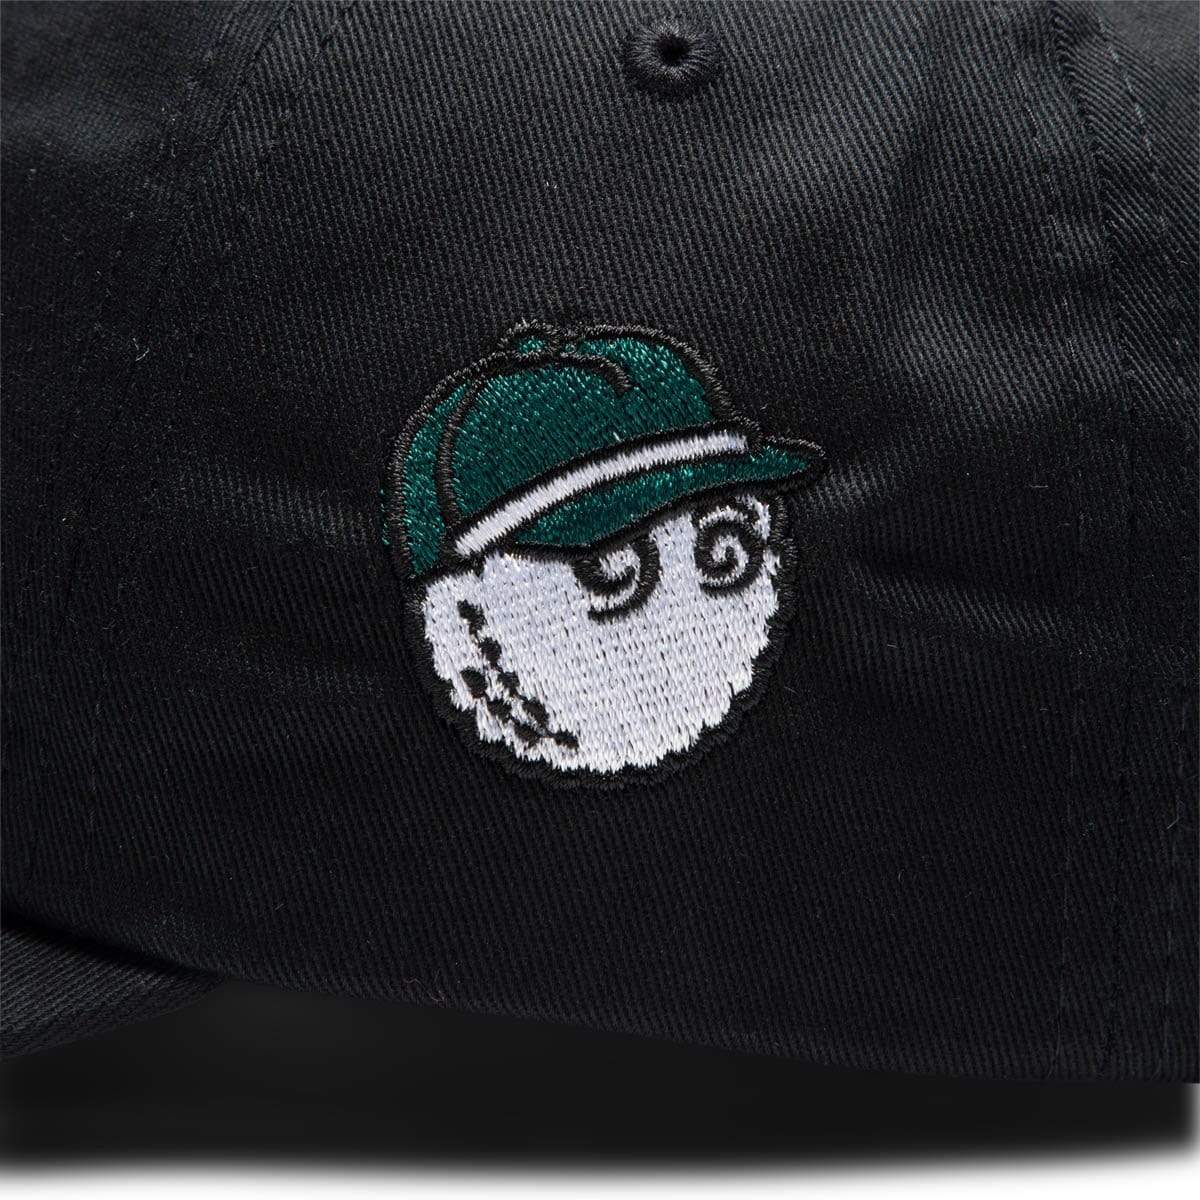 Malbon Golf Headwear BLACK / O/S CLUB DAD HAT